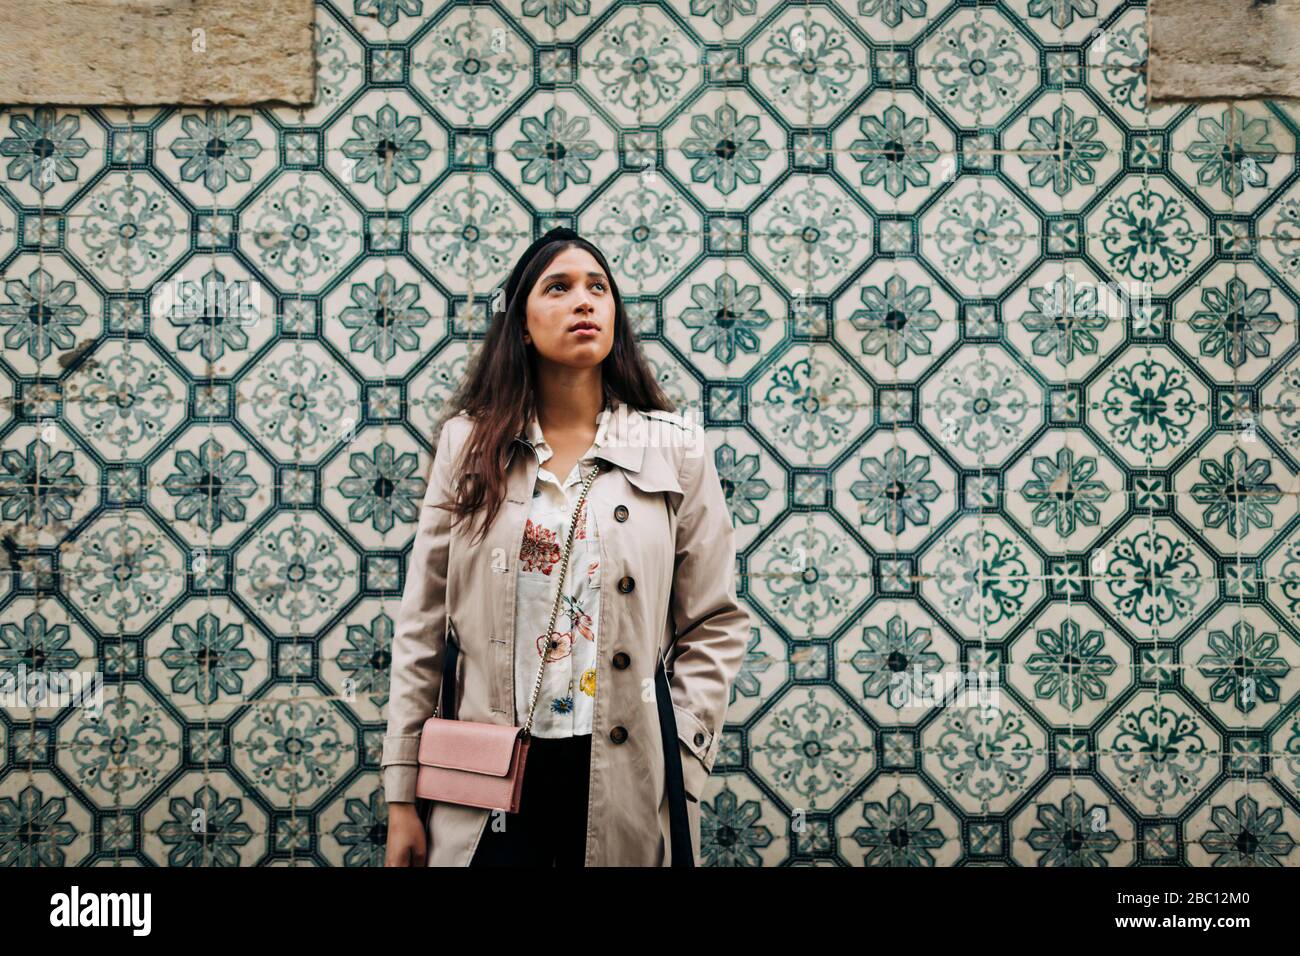 Portugal, Lisbonne, Jeune voyageur à la recherche et se tenant sur un mur avec des tuiles typiquement portugaises Banque D'Images